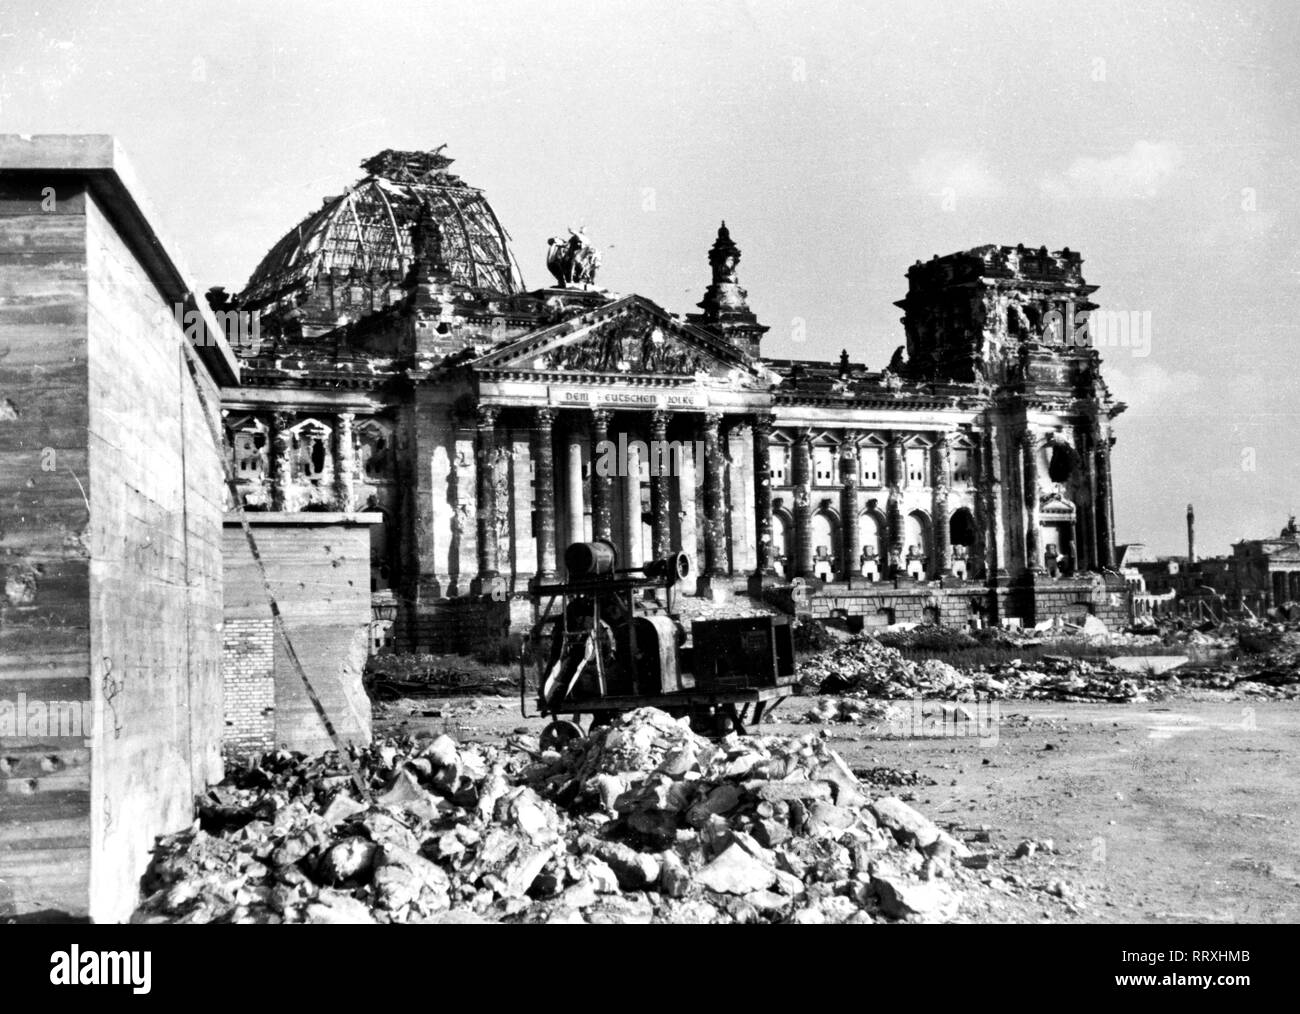 Berlin - Nachkriegsdeutschland - Berlin - Nachkriegsdeutschland, Juni 1945. Das zerstörte Reichstagsgebäude 1945 in Berlin. Bombed German parliament Reichstag at Berlin, June 1945. Stock Photo